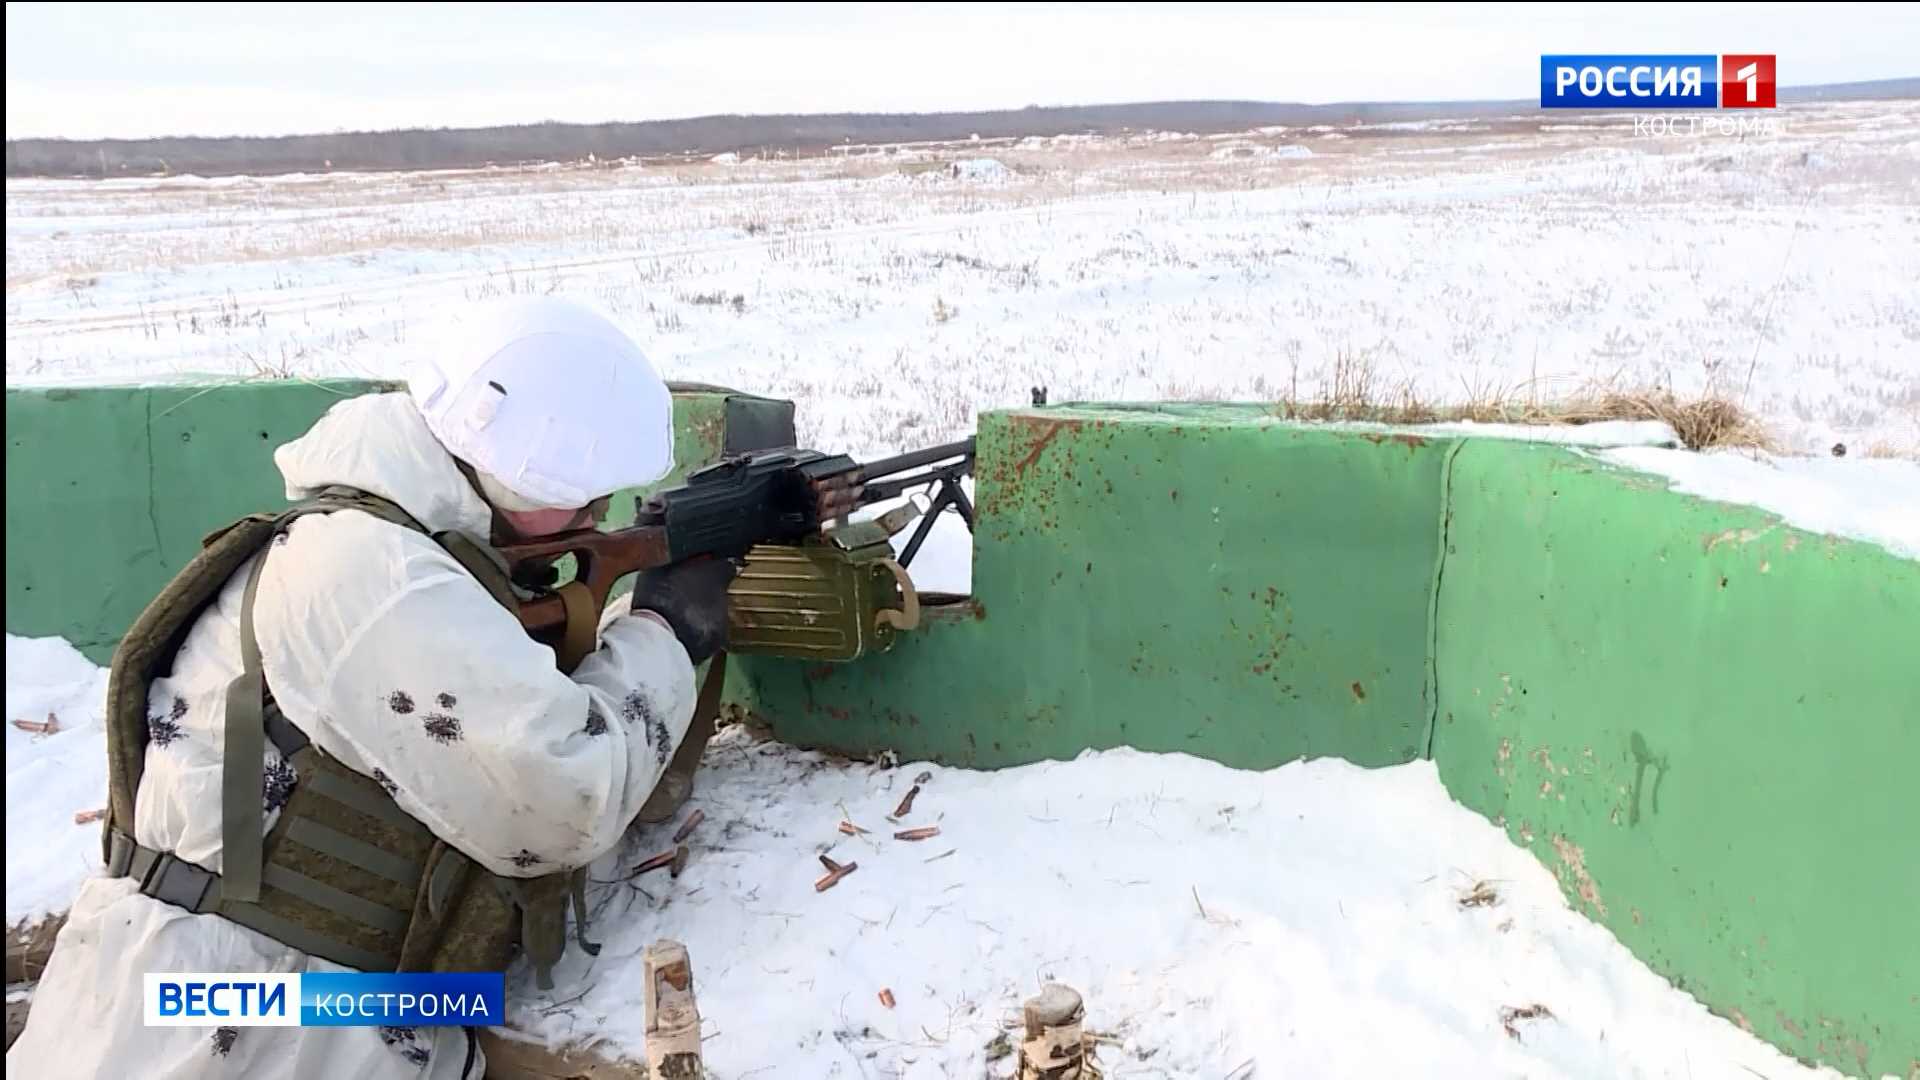 Десантники из Костромы приступили к выполнению задач на территории Казахстана